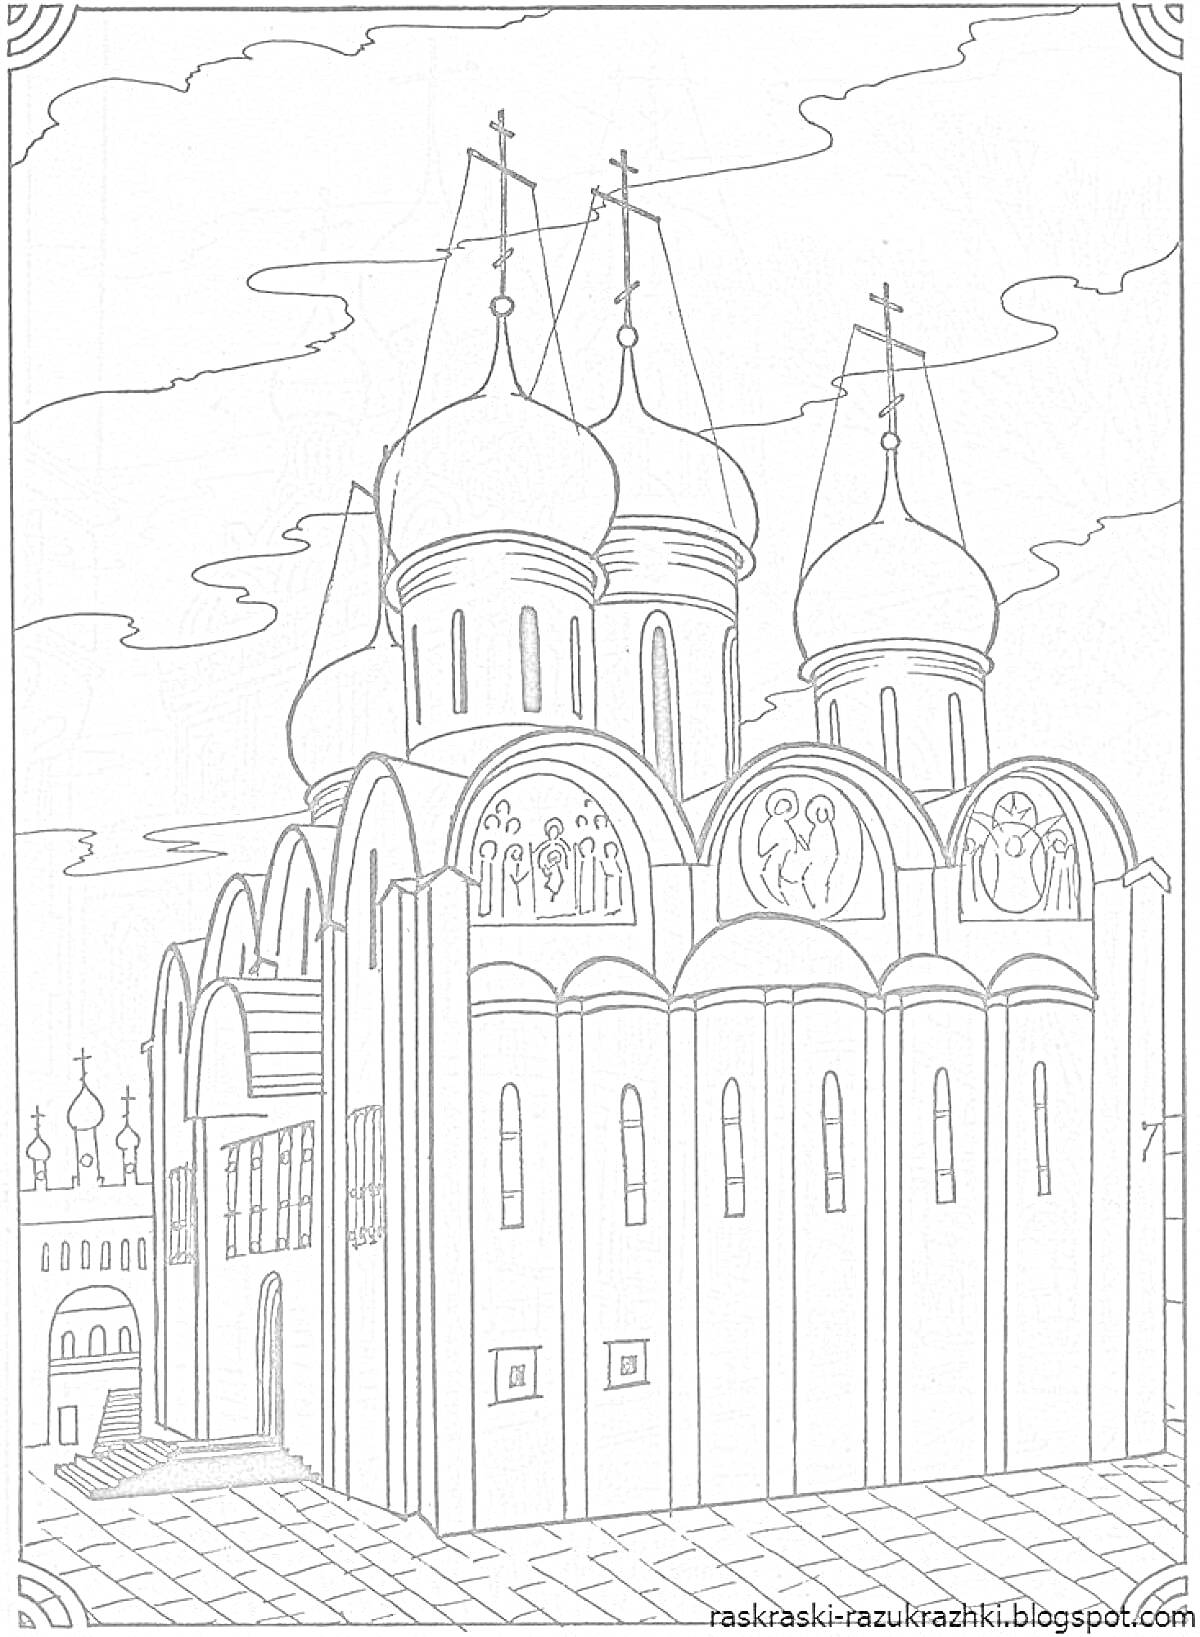 Раскраска Храм с четырьмя куполами, иконы на фасаде, лестница, окна, кресты, облака